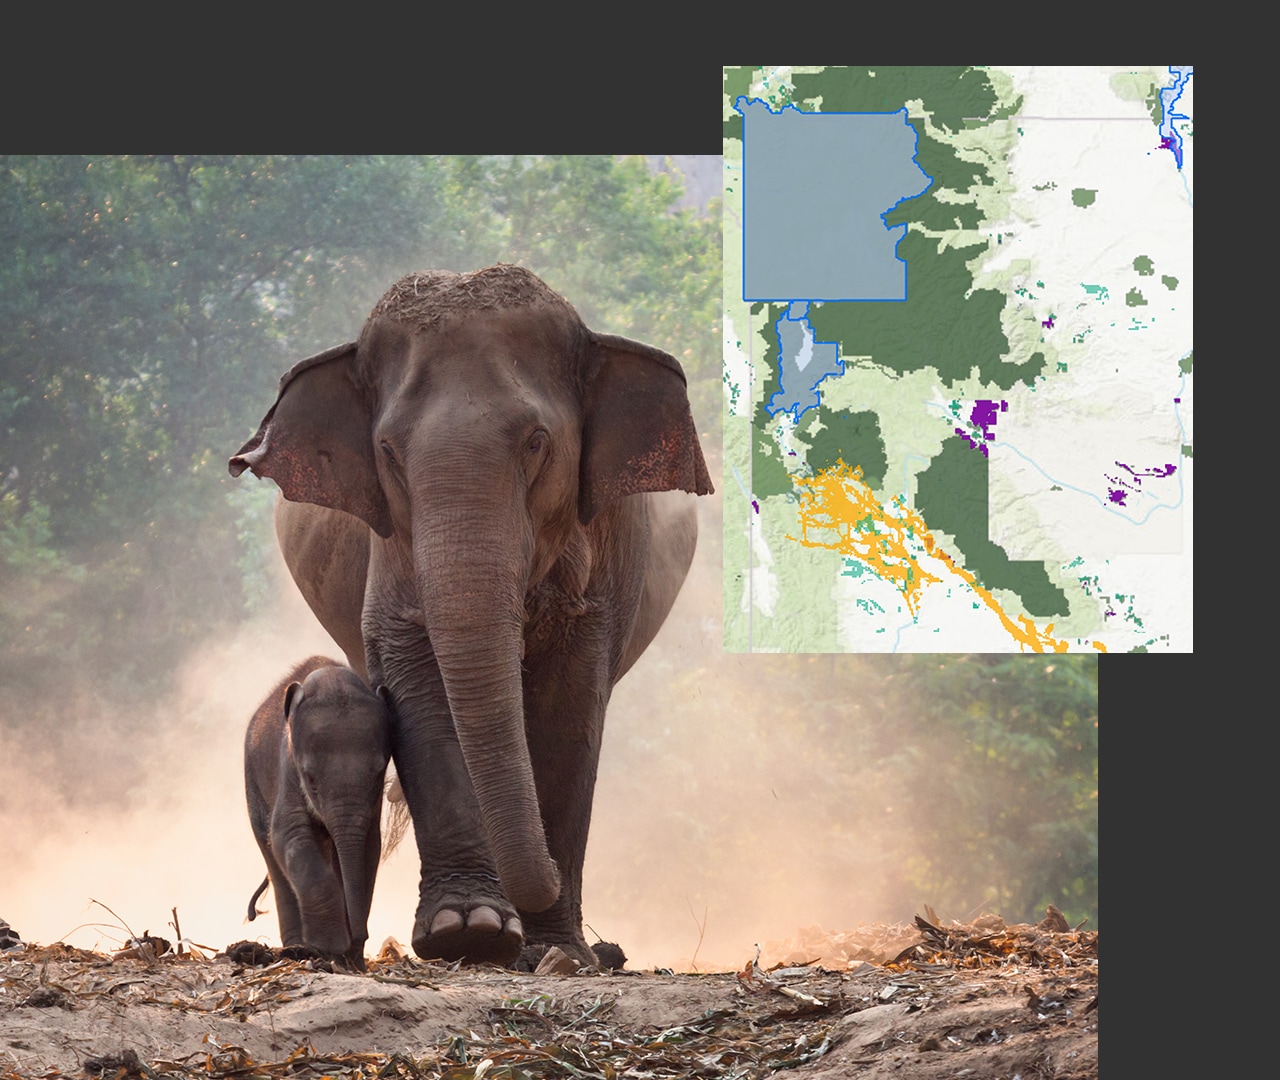 Elefant mit Elefantenjungem im Wald, daneben die Abbildung einer grünen digitalen Karte